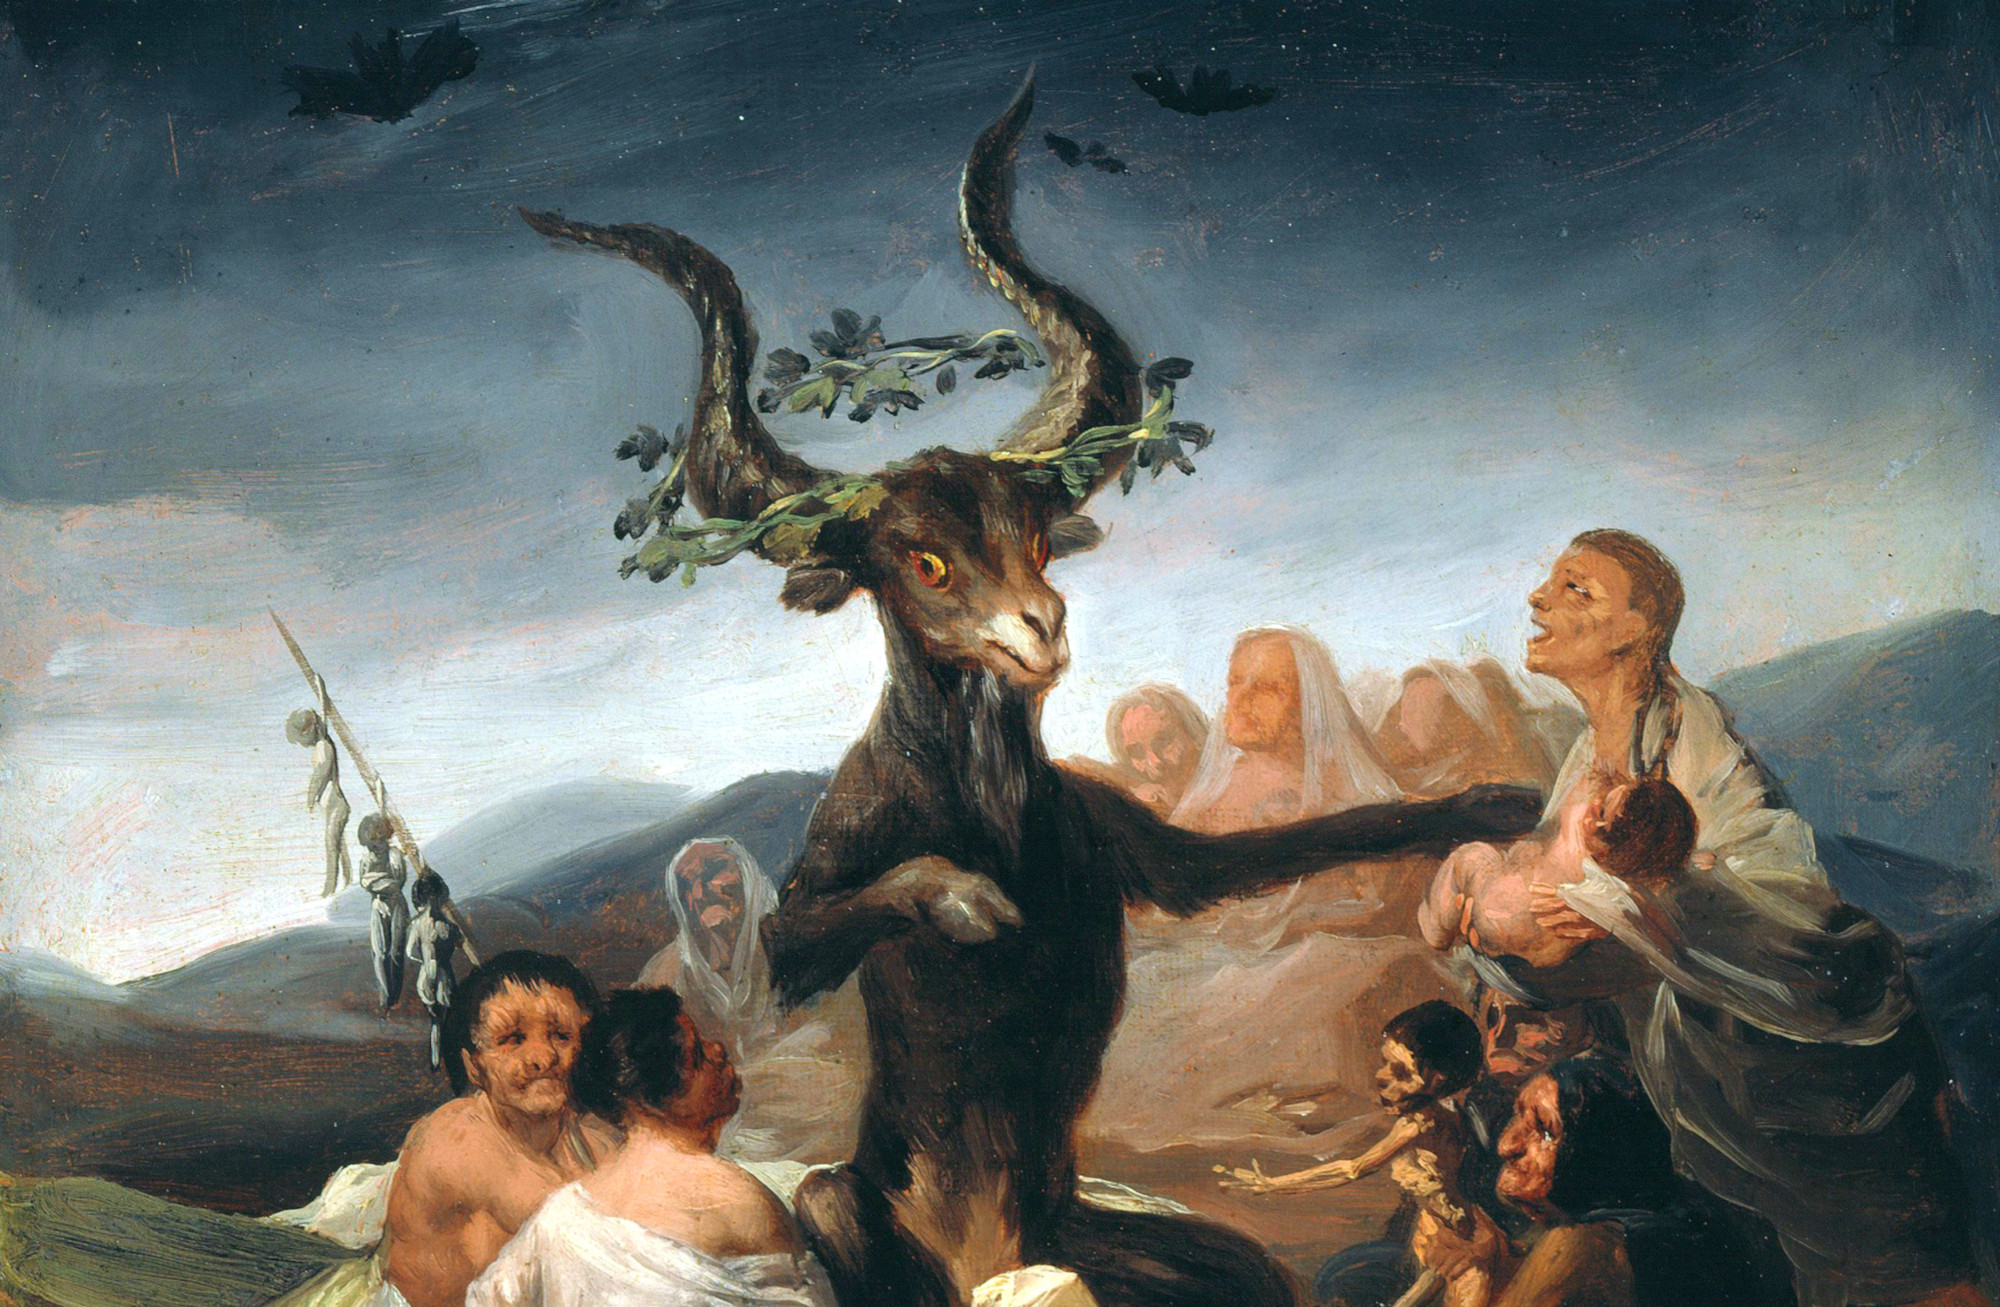 Diabeł w postaci czarnego kozła z potężnymi krętymi rogami siedzi w otoczeniu wiejskich kobiet. Jedna z nich podaje mu noworodka.